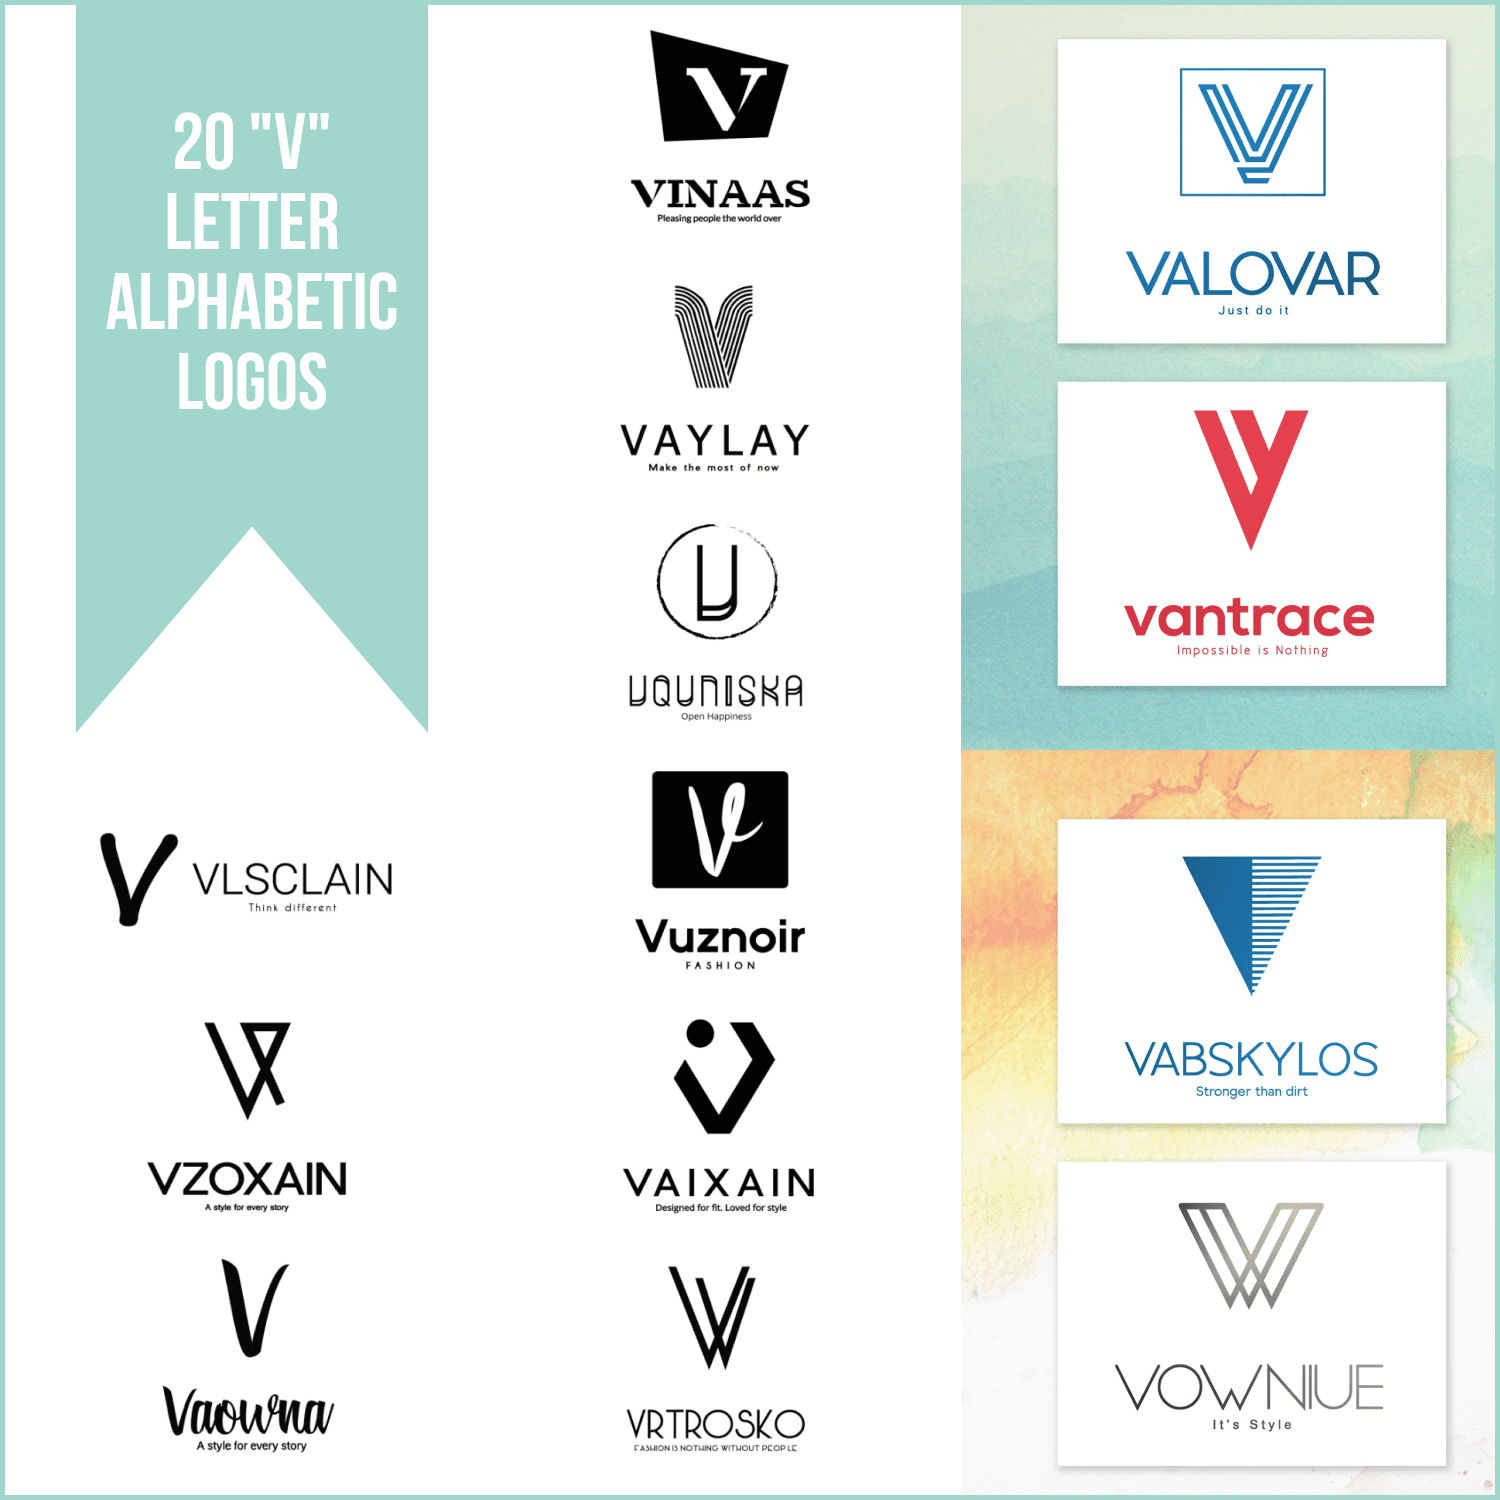 20 "V" Letter Alphabetic Logos.